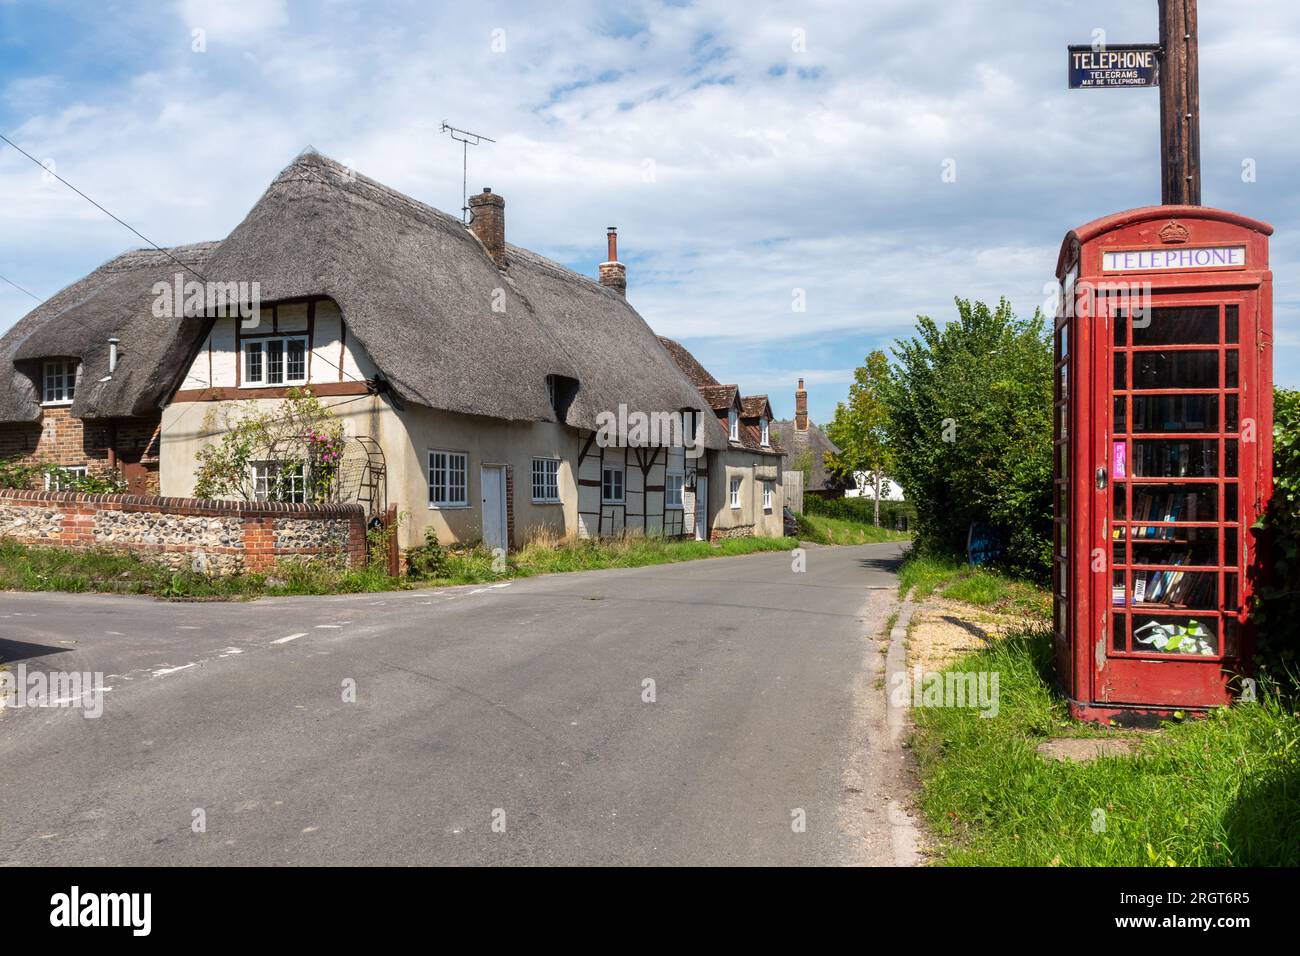 Boîte téléphonique rouge dans le village de Longstock avec la lecture historique de vieux signes télégrammes téléphoniques peuvent être téléphonés, Hampshire, Angleterre, Royaume-Uni Banque D'Images